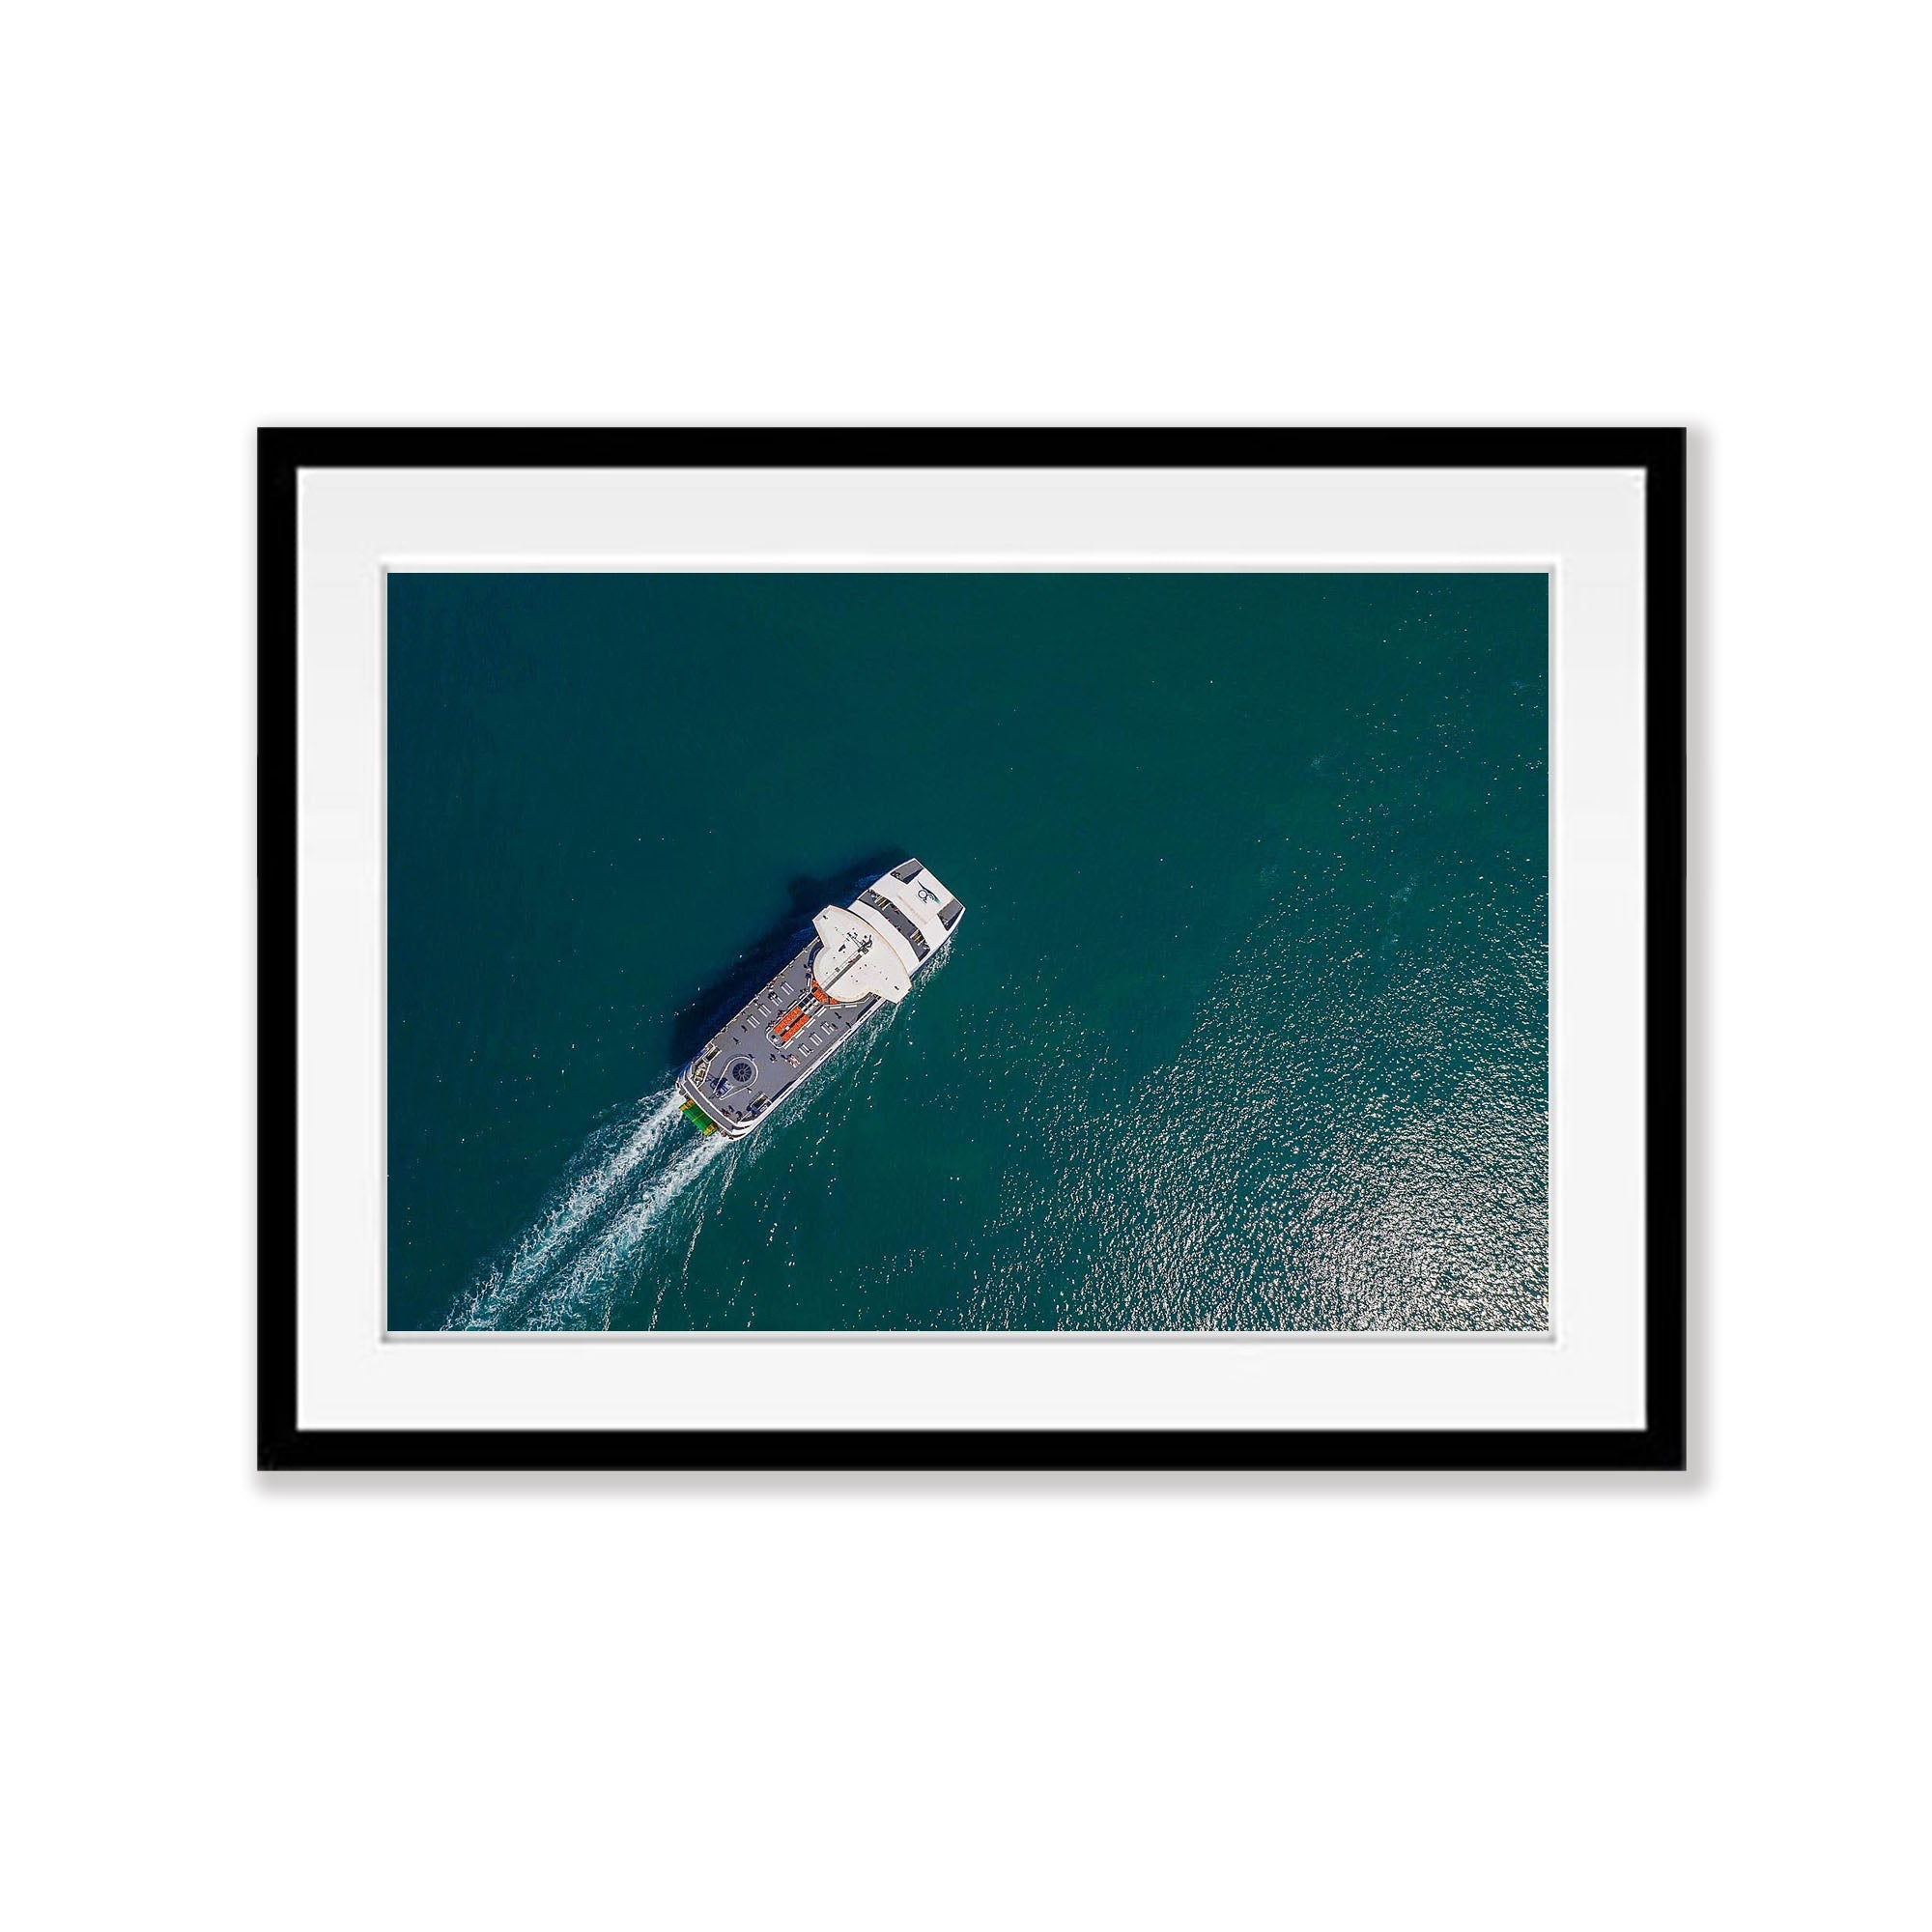 Searoad Ferry from above, Mornington Peninsula, VIC